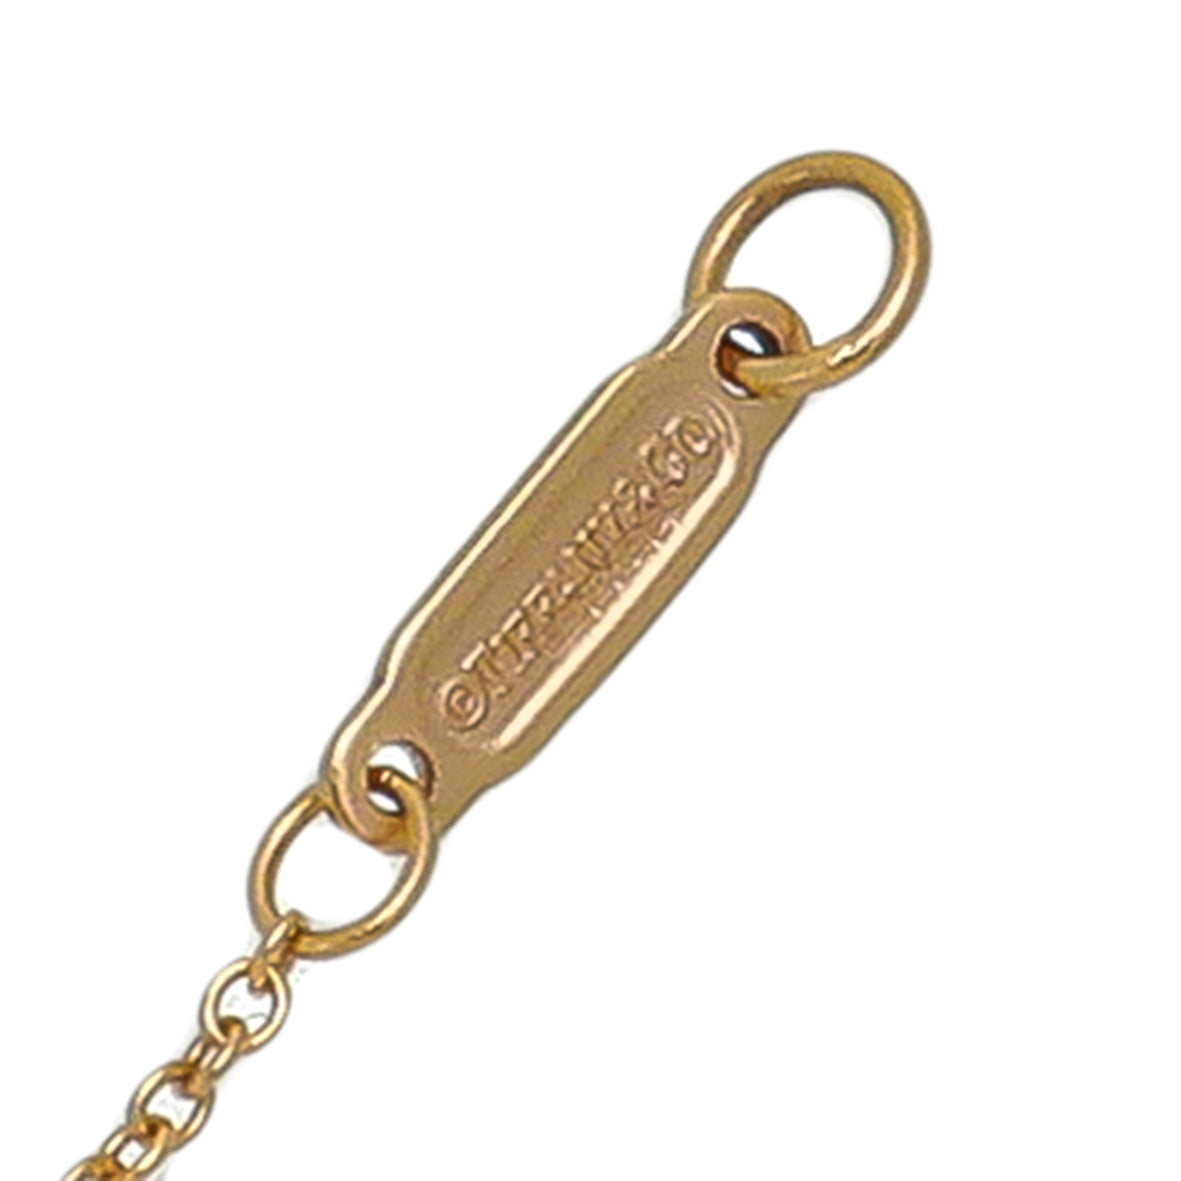 Tiffany & Co 18K Yellow Gold Diamond Heart Key Charm Necklace